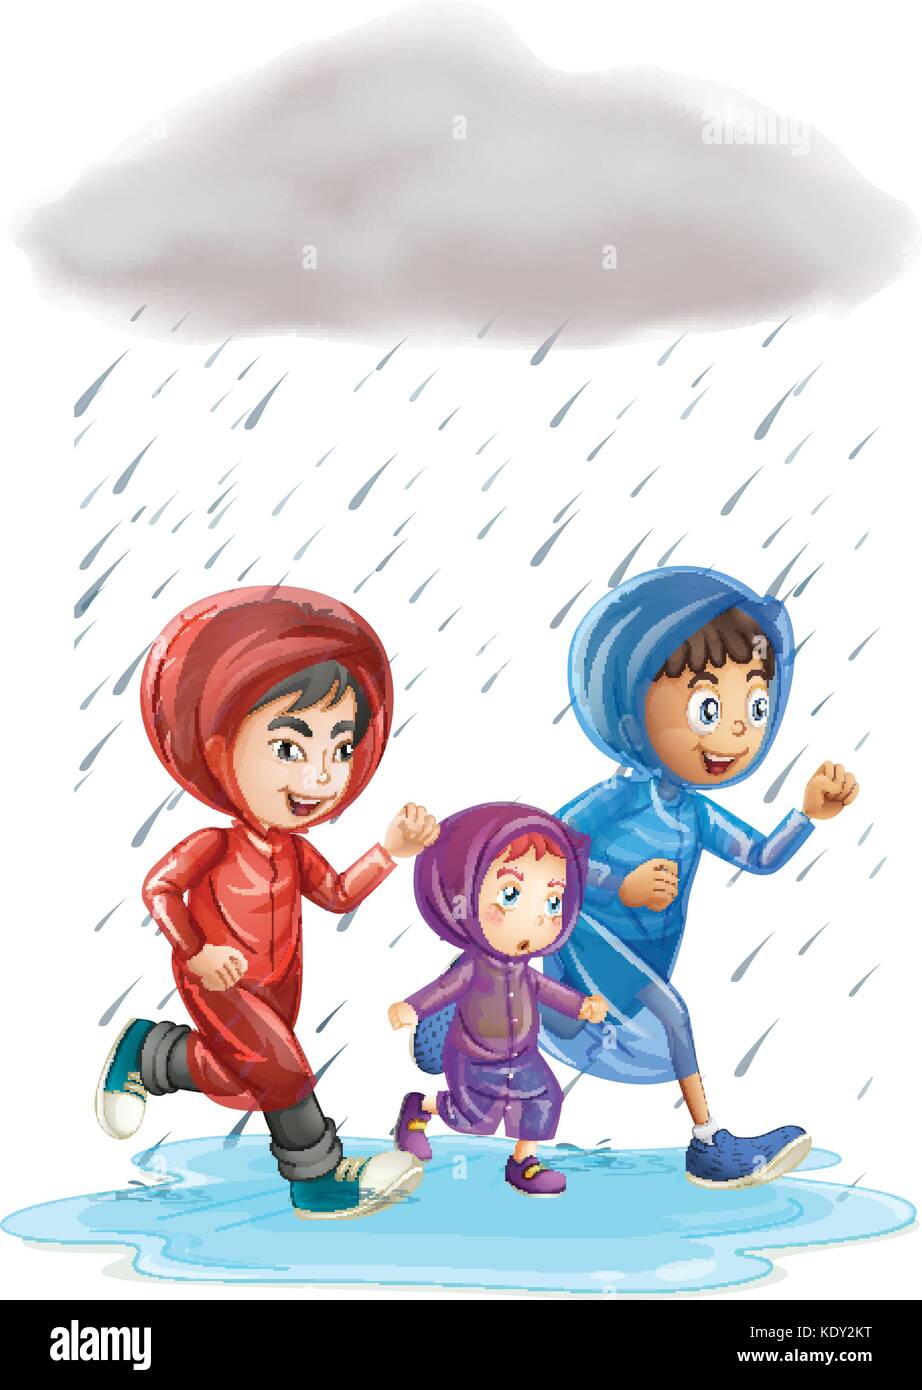 Three kids running in the rain illustration Stock Vector